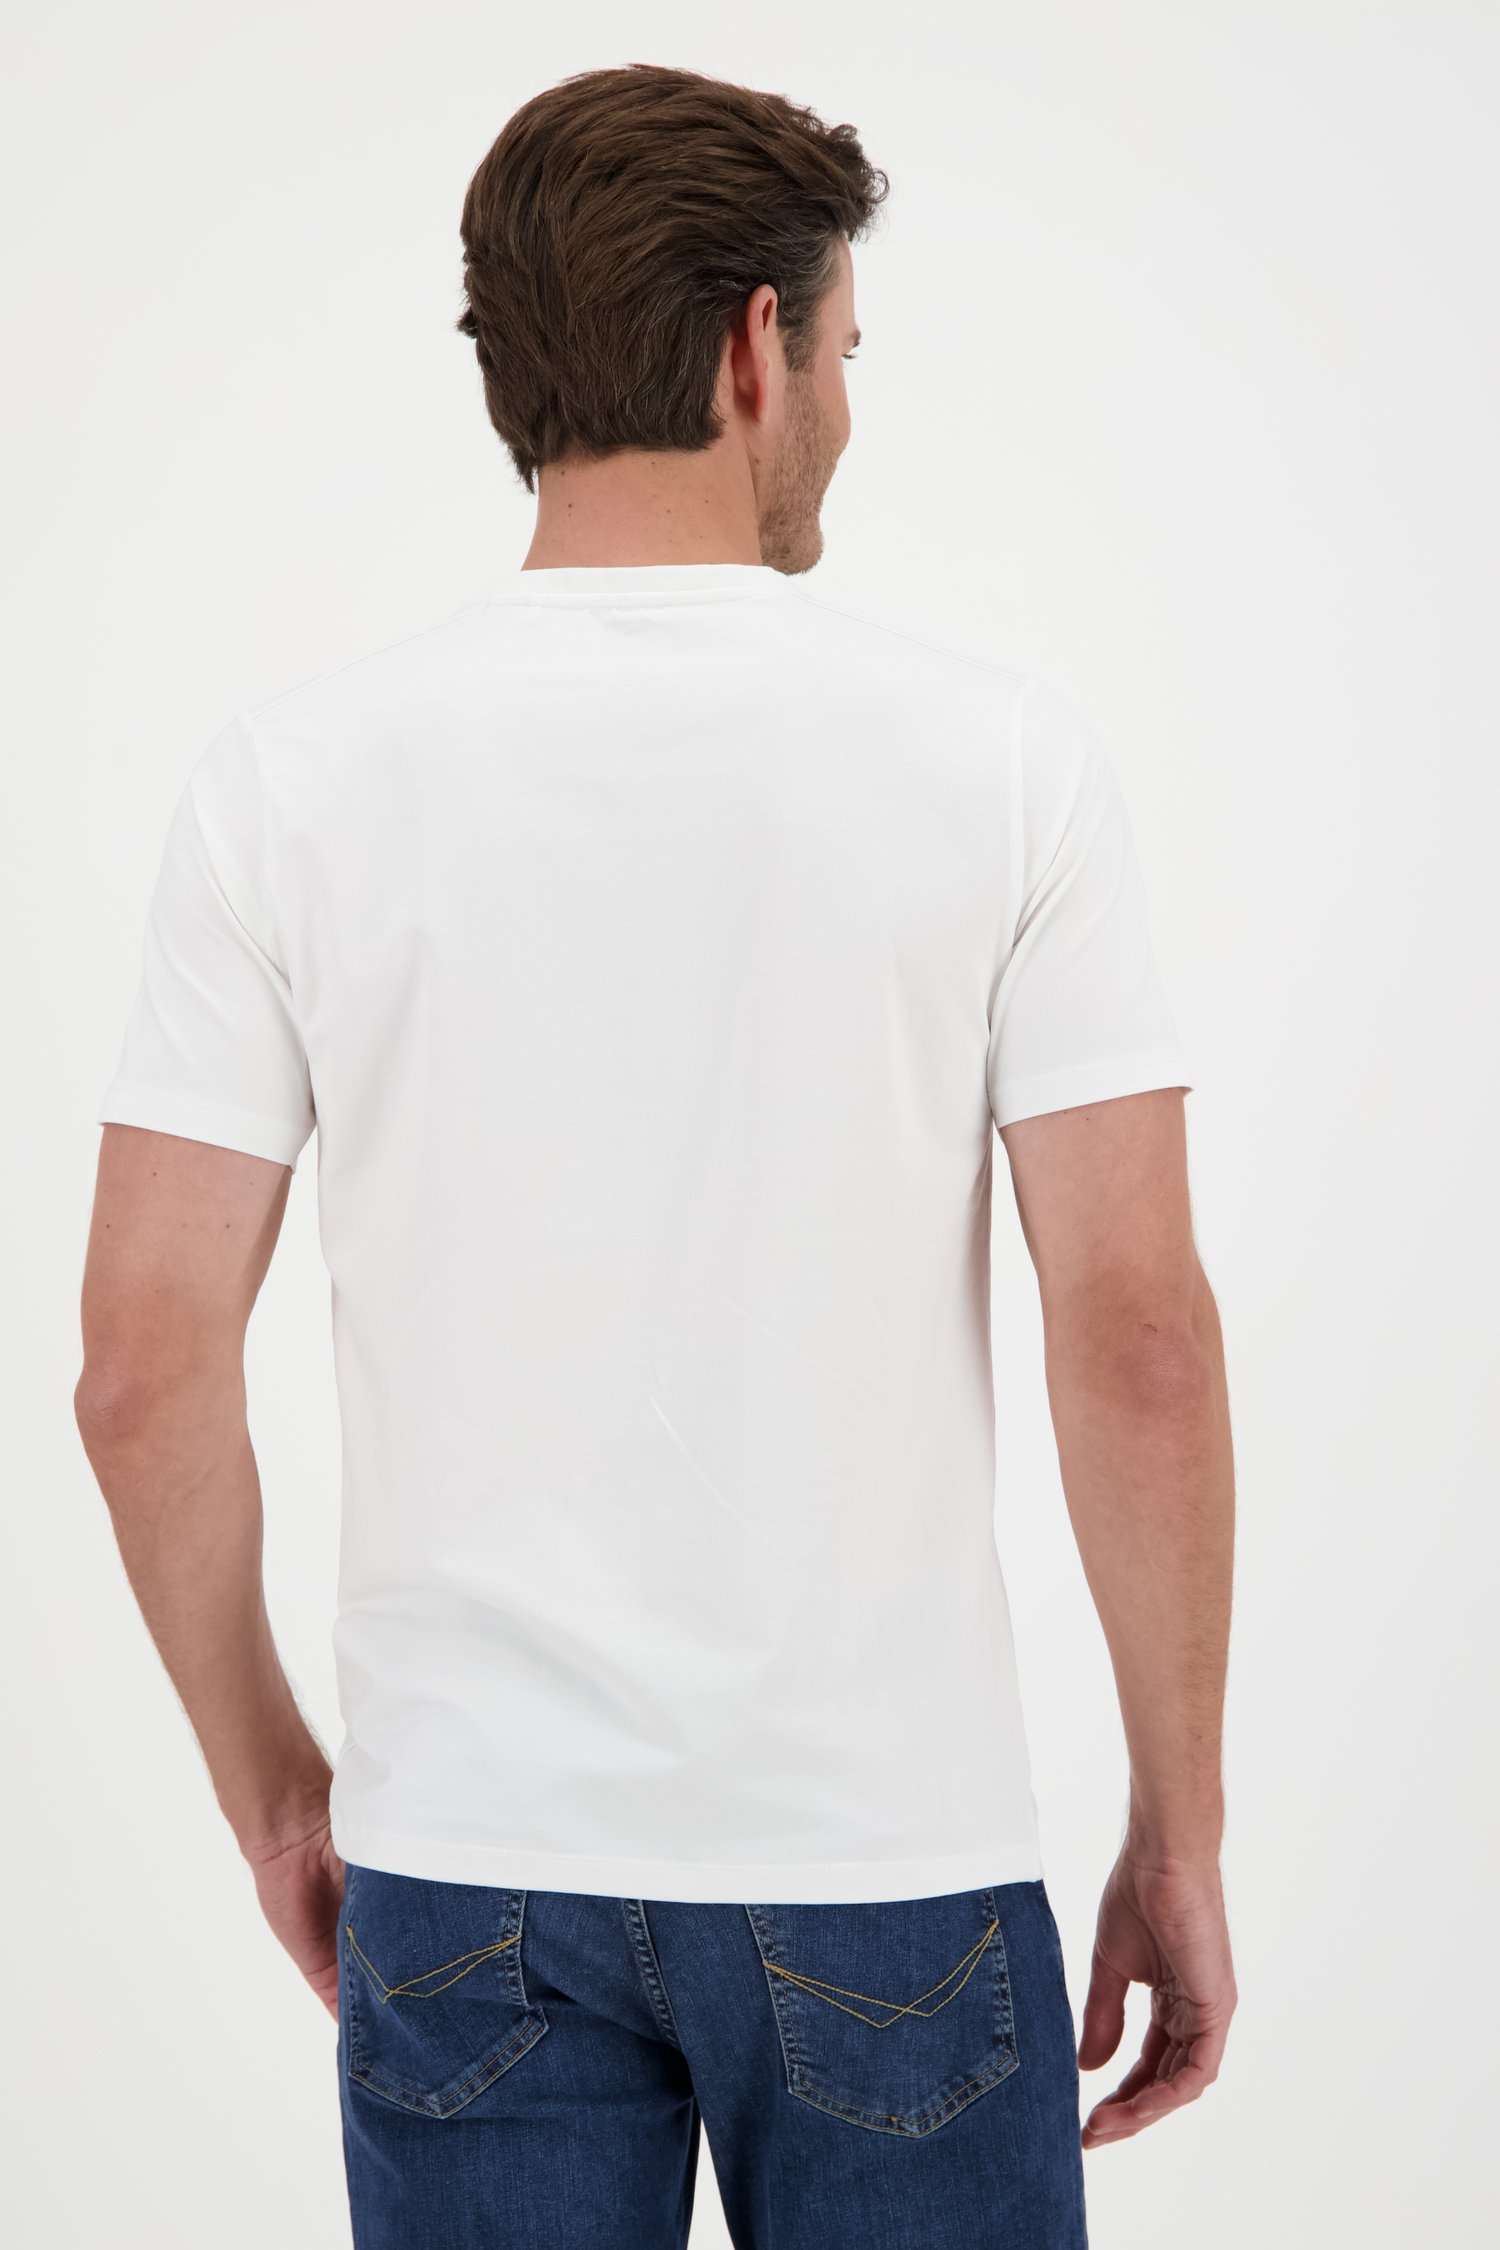 Basic wit T-shirt met V-hals van Ravøtt voor Heren